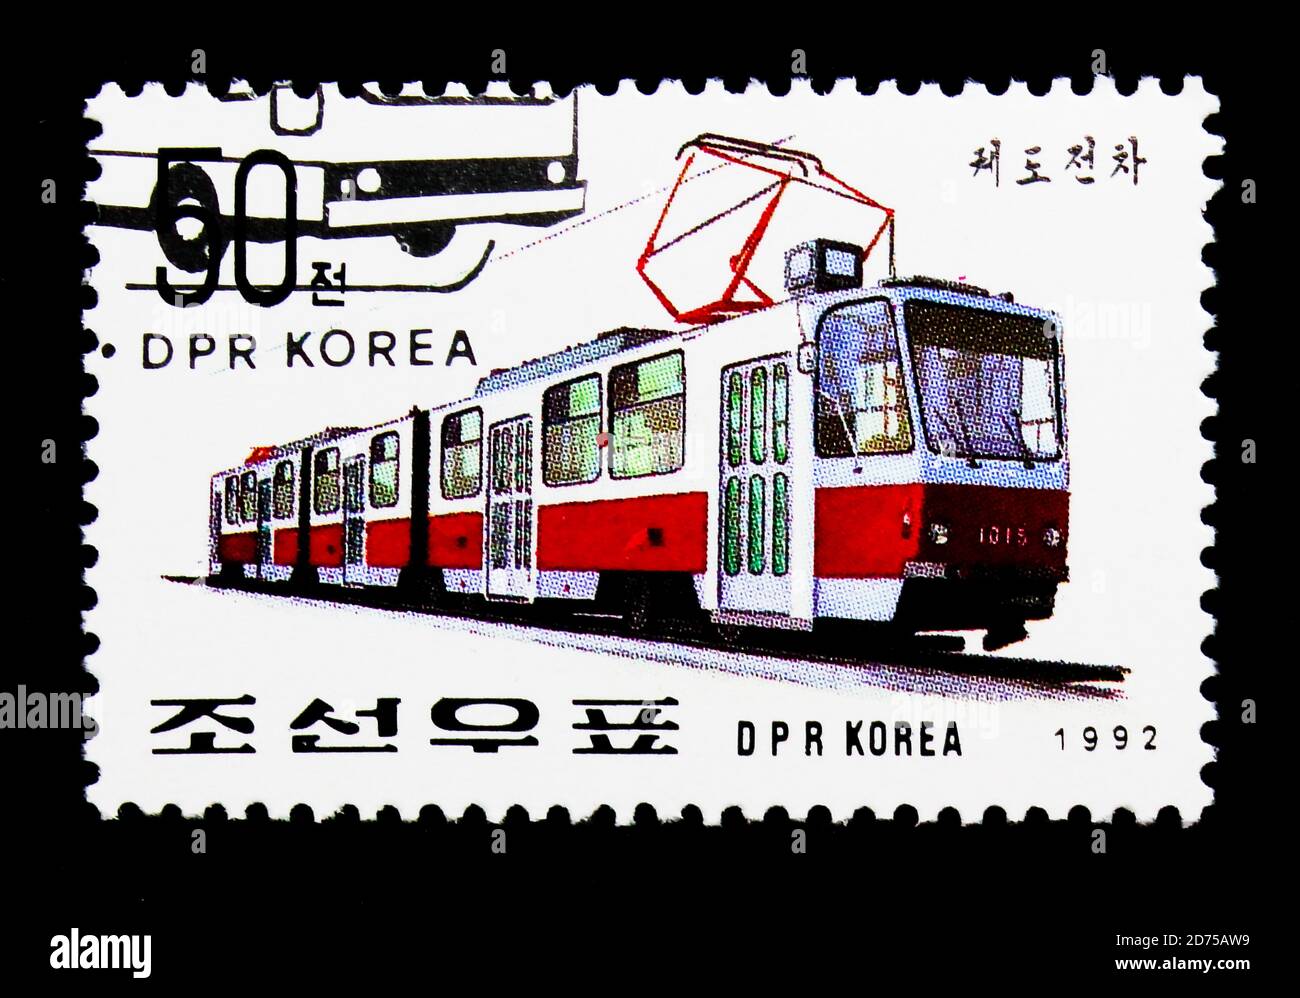 MOSCOU, RUSSIE - 25 NOVEMBRE 2017 : un timbre imprimé en république populaire démocratique de Corée montre Tramway - 1015, exposition internationale de timbres - es Banque D'Images